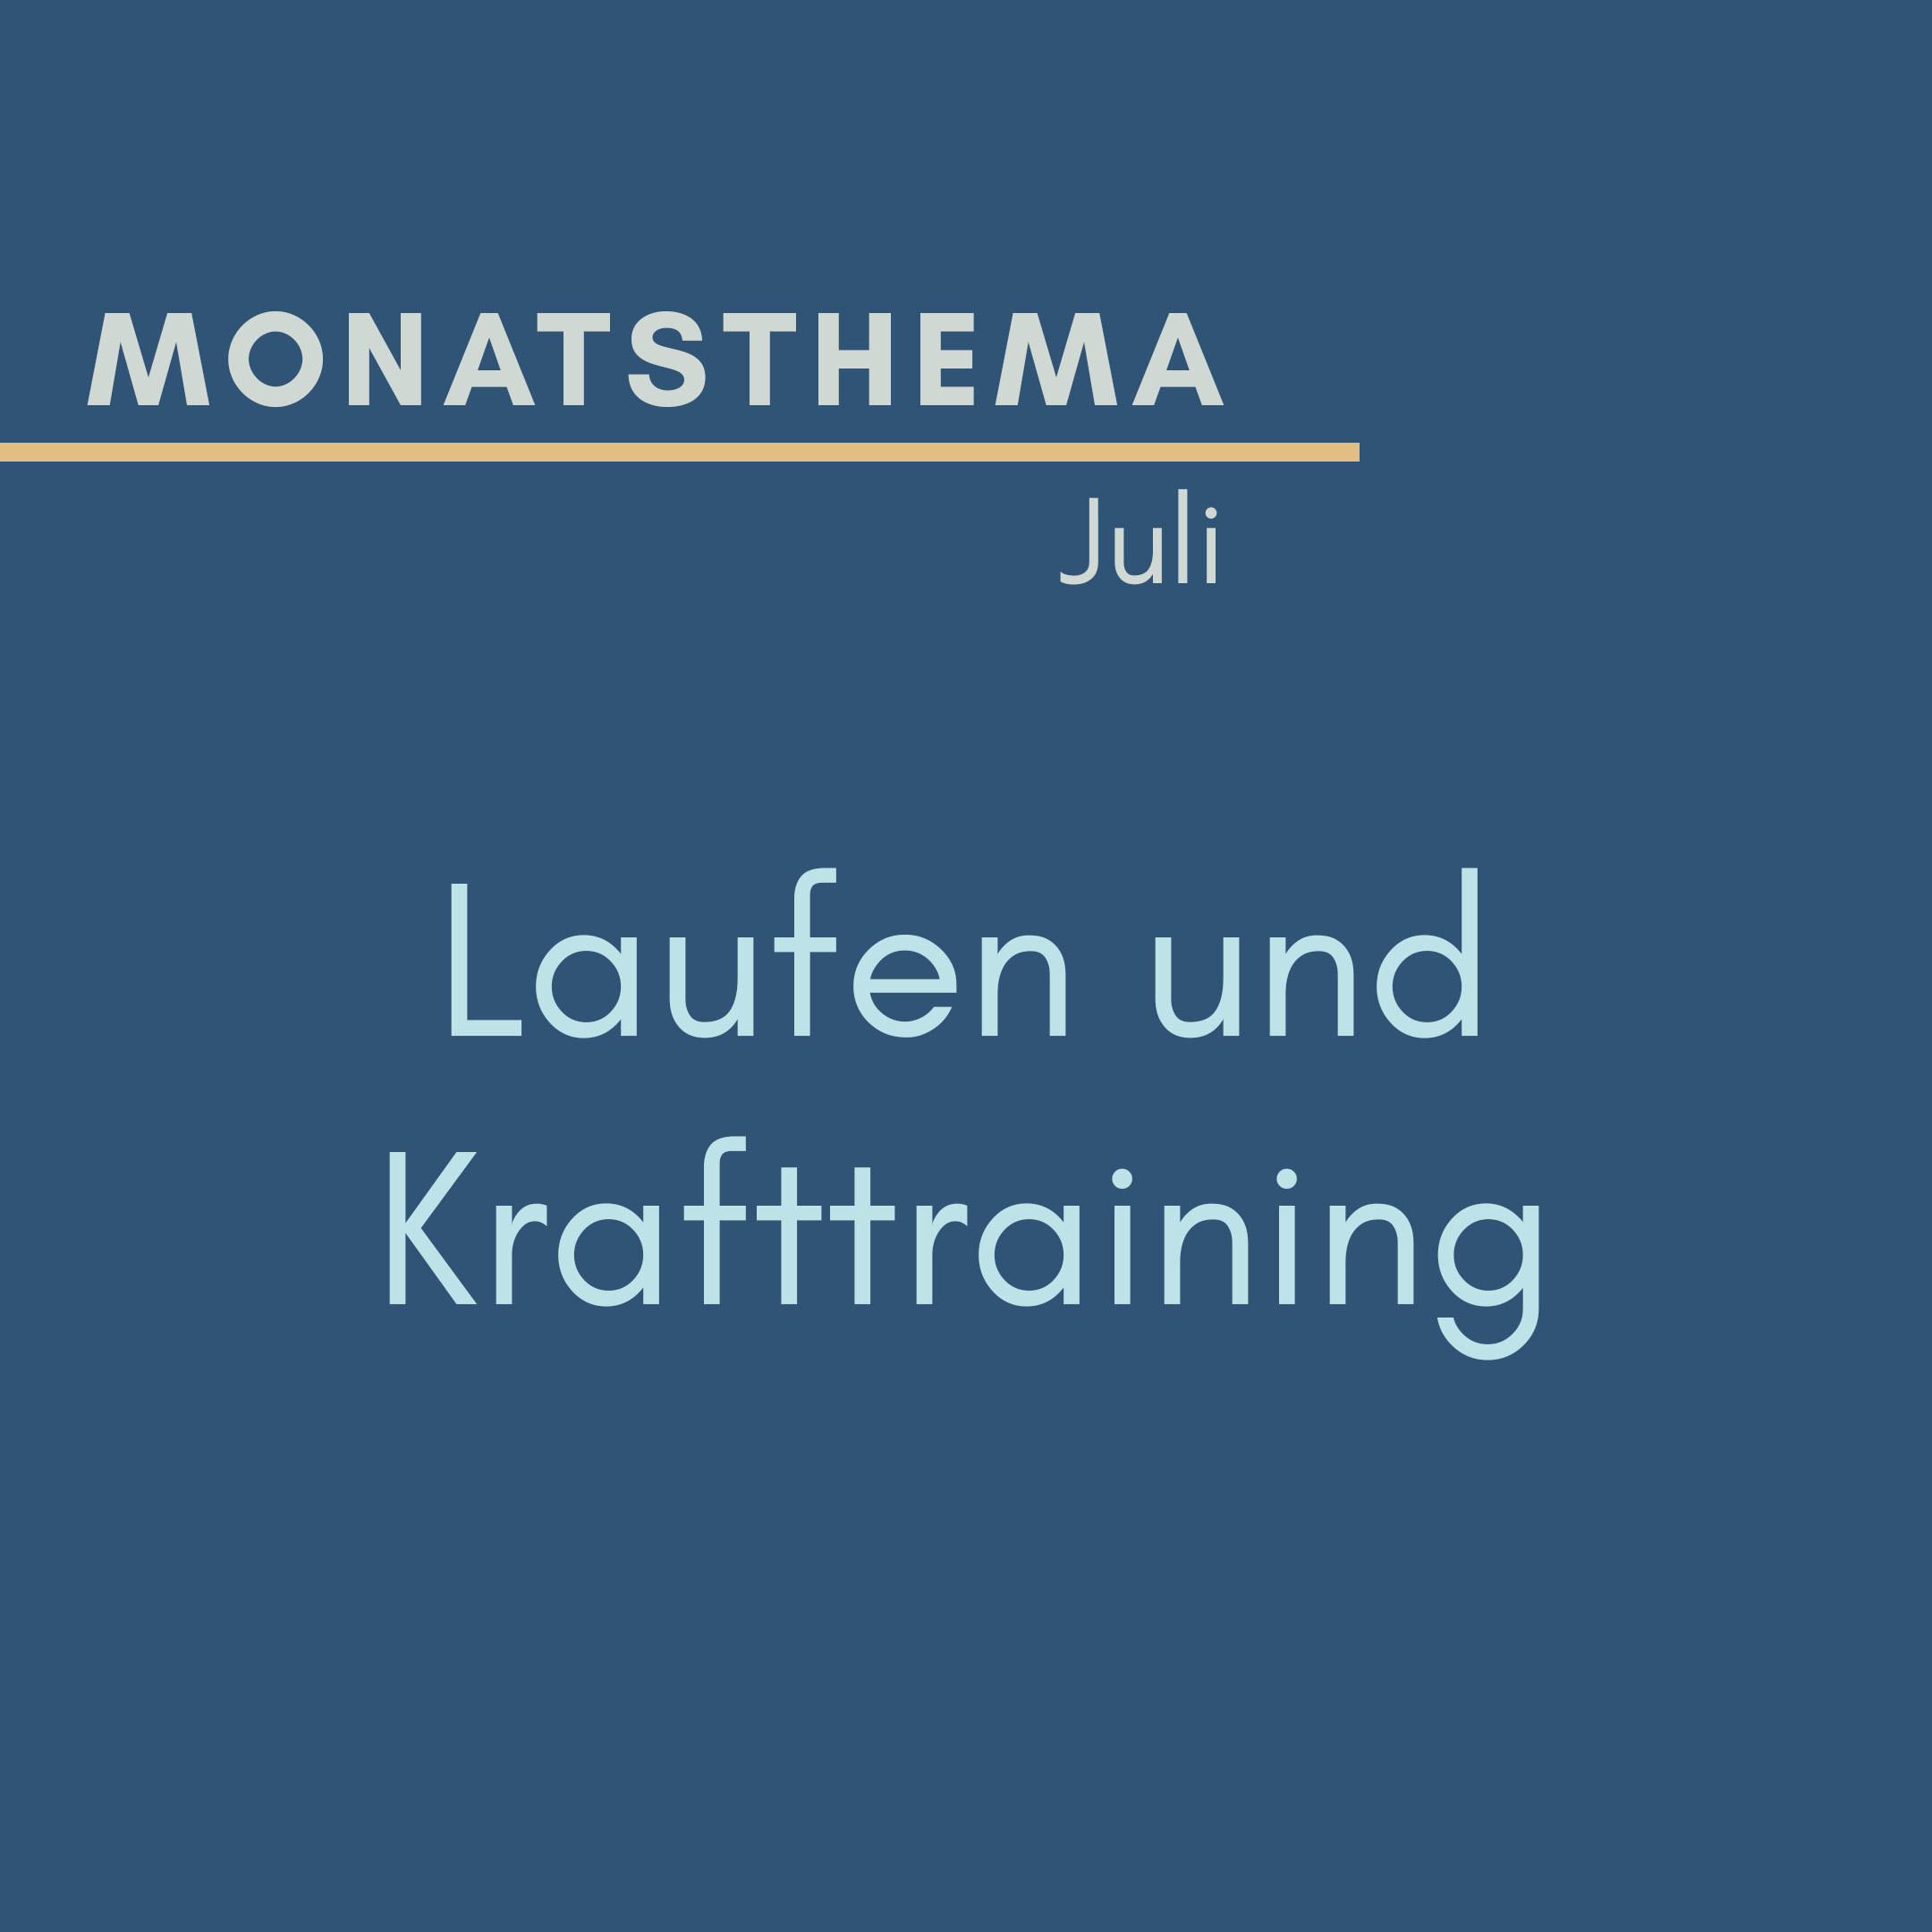 blauer Hintergrund mit Text: Monatsthema Juni, Laufen und Krafttraining